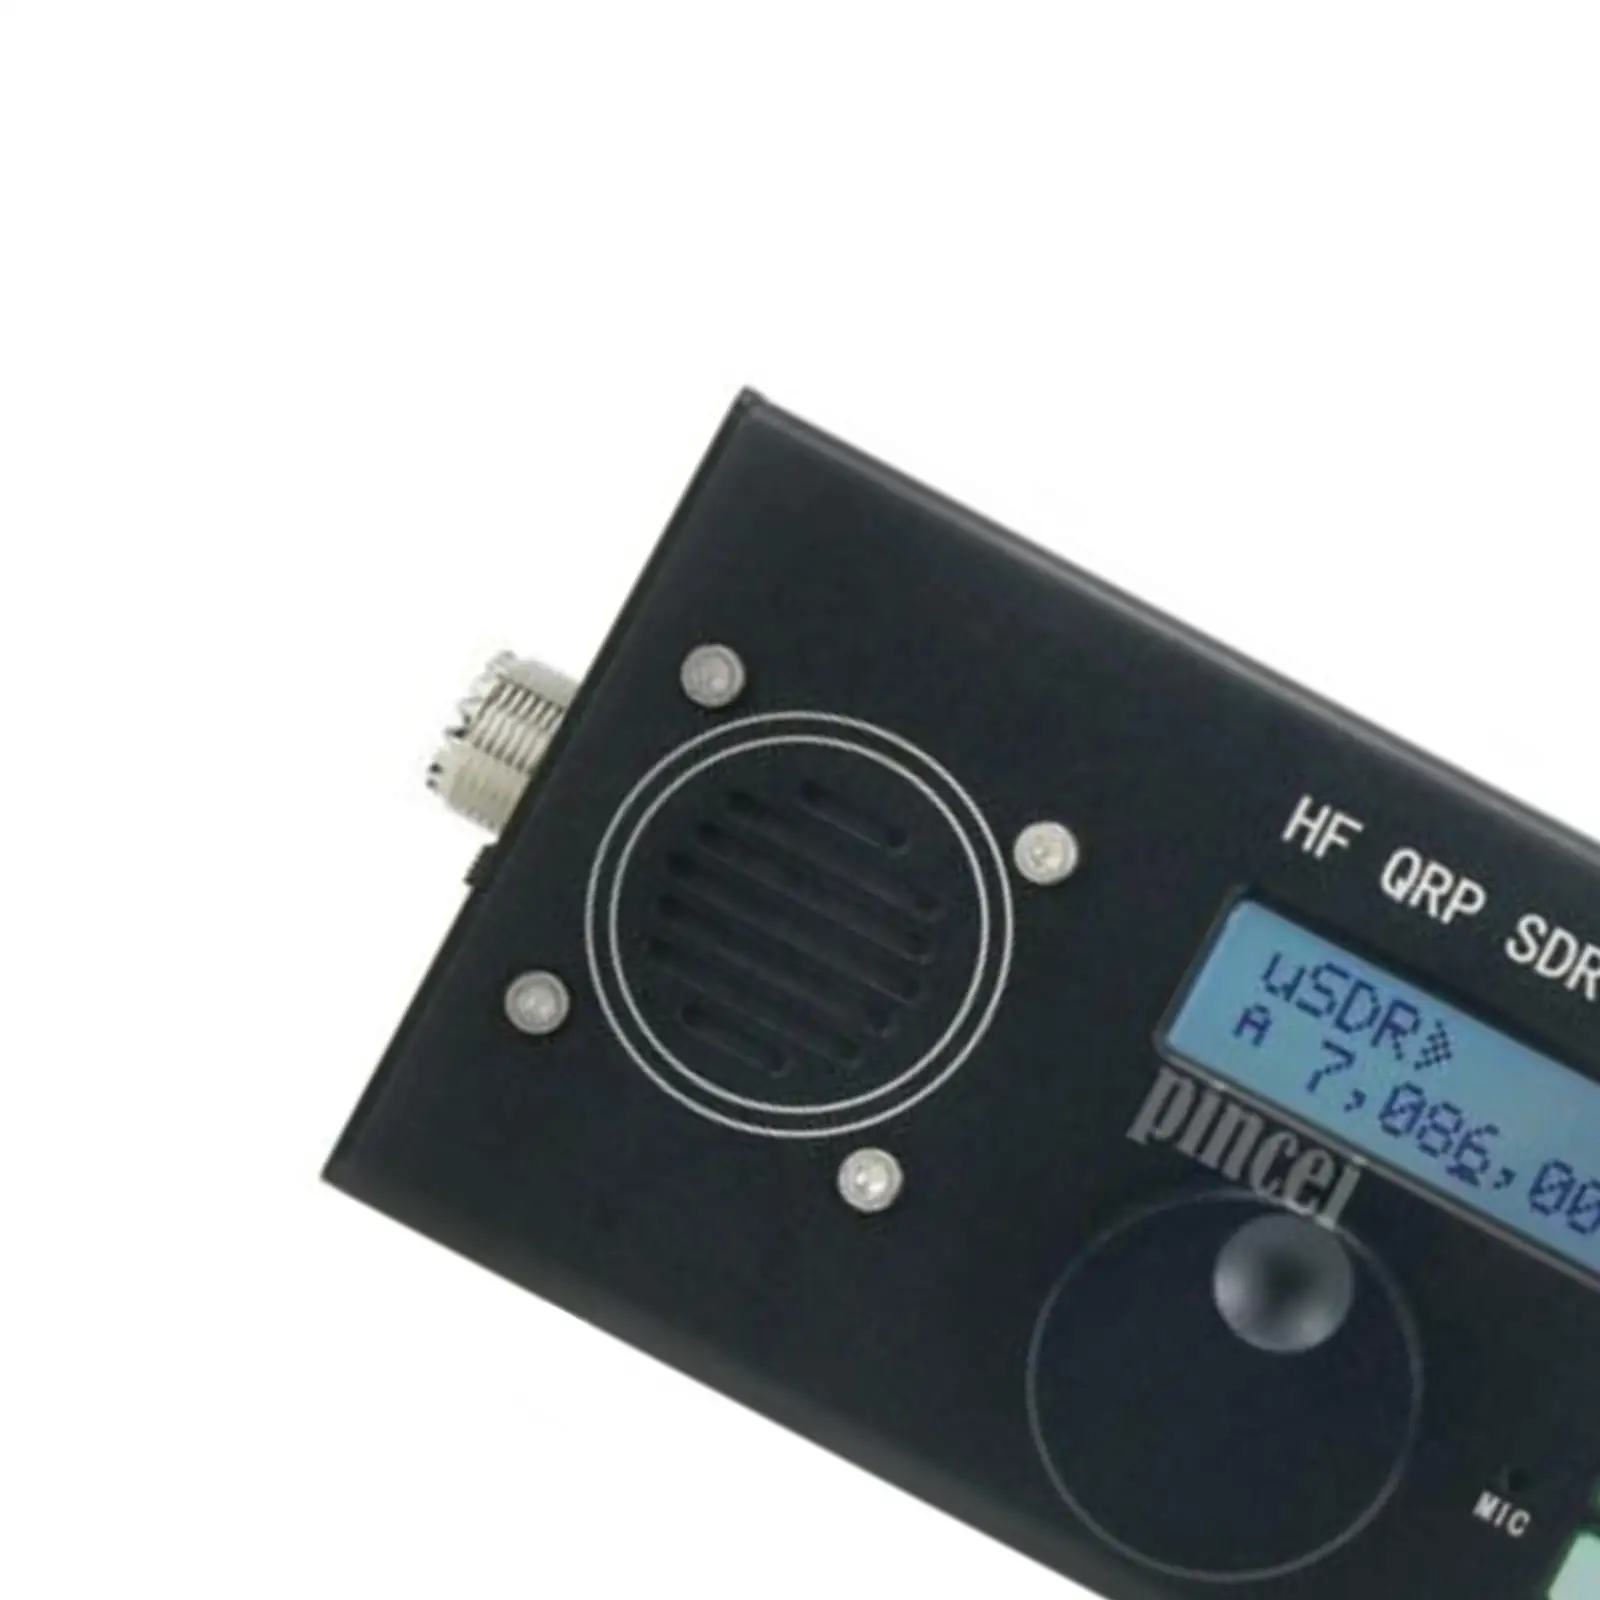 Aluminum Alloy Usdx Transceiver 8 Band All Mode 9-13.8V HF Ham Radio AM/FM Mode Ssb Mode SDR Transceiver